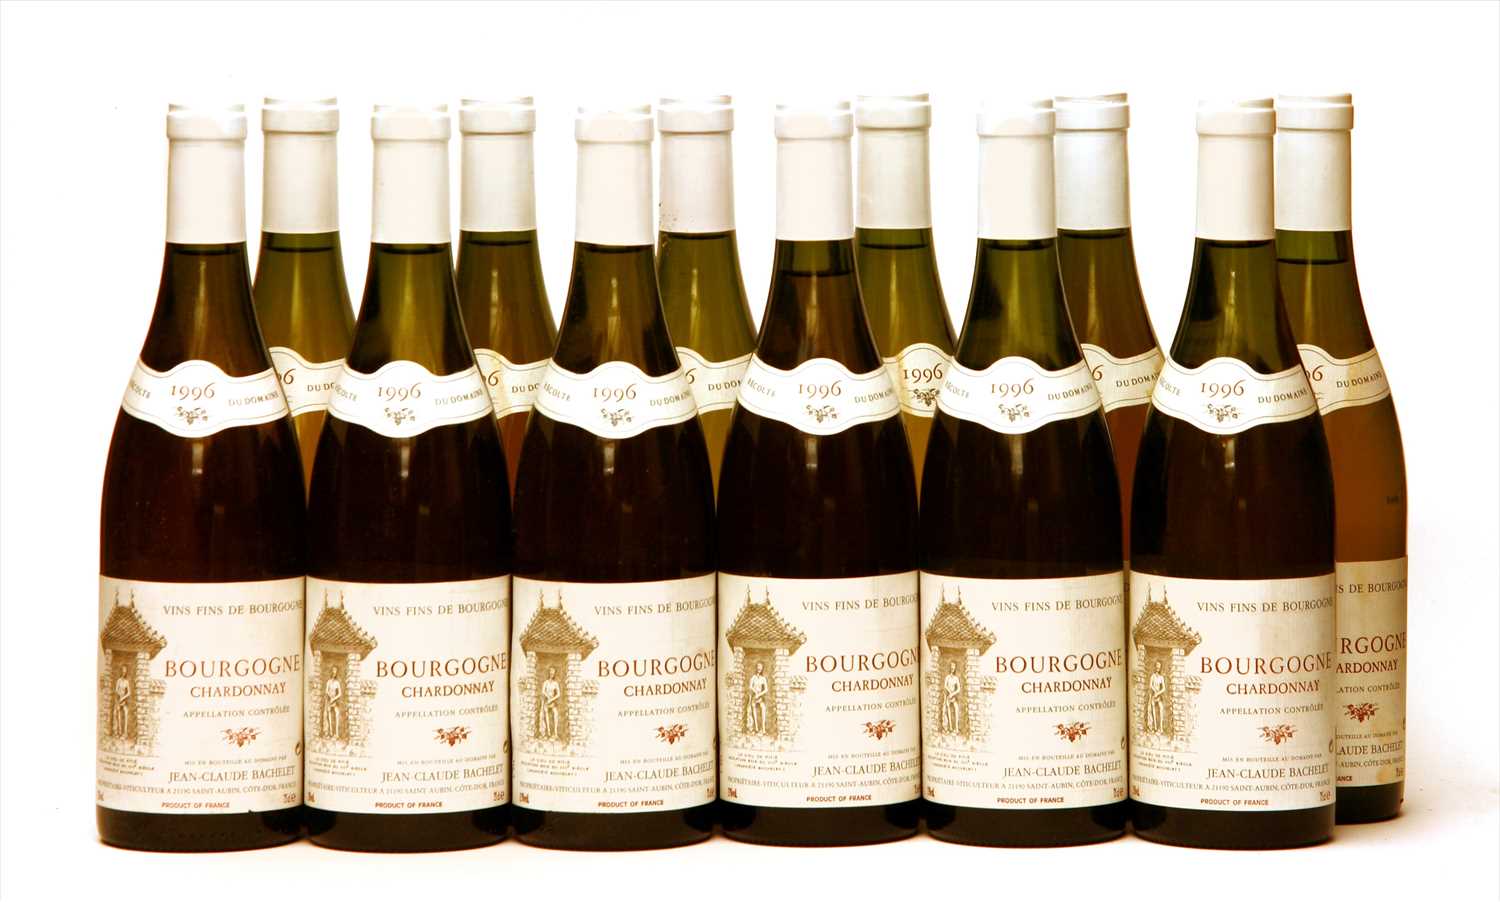 Lot 26 - Jean-Claude Bachelet, Bourgogne Chardonnay, 1996, twelve bottles